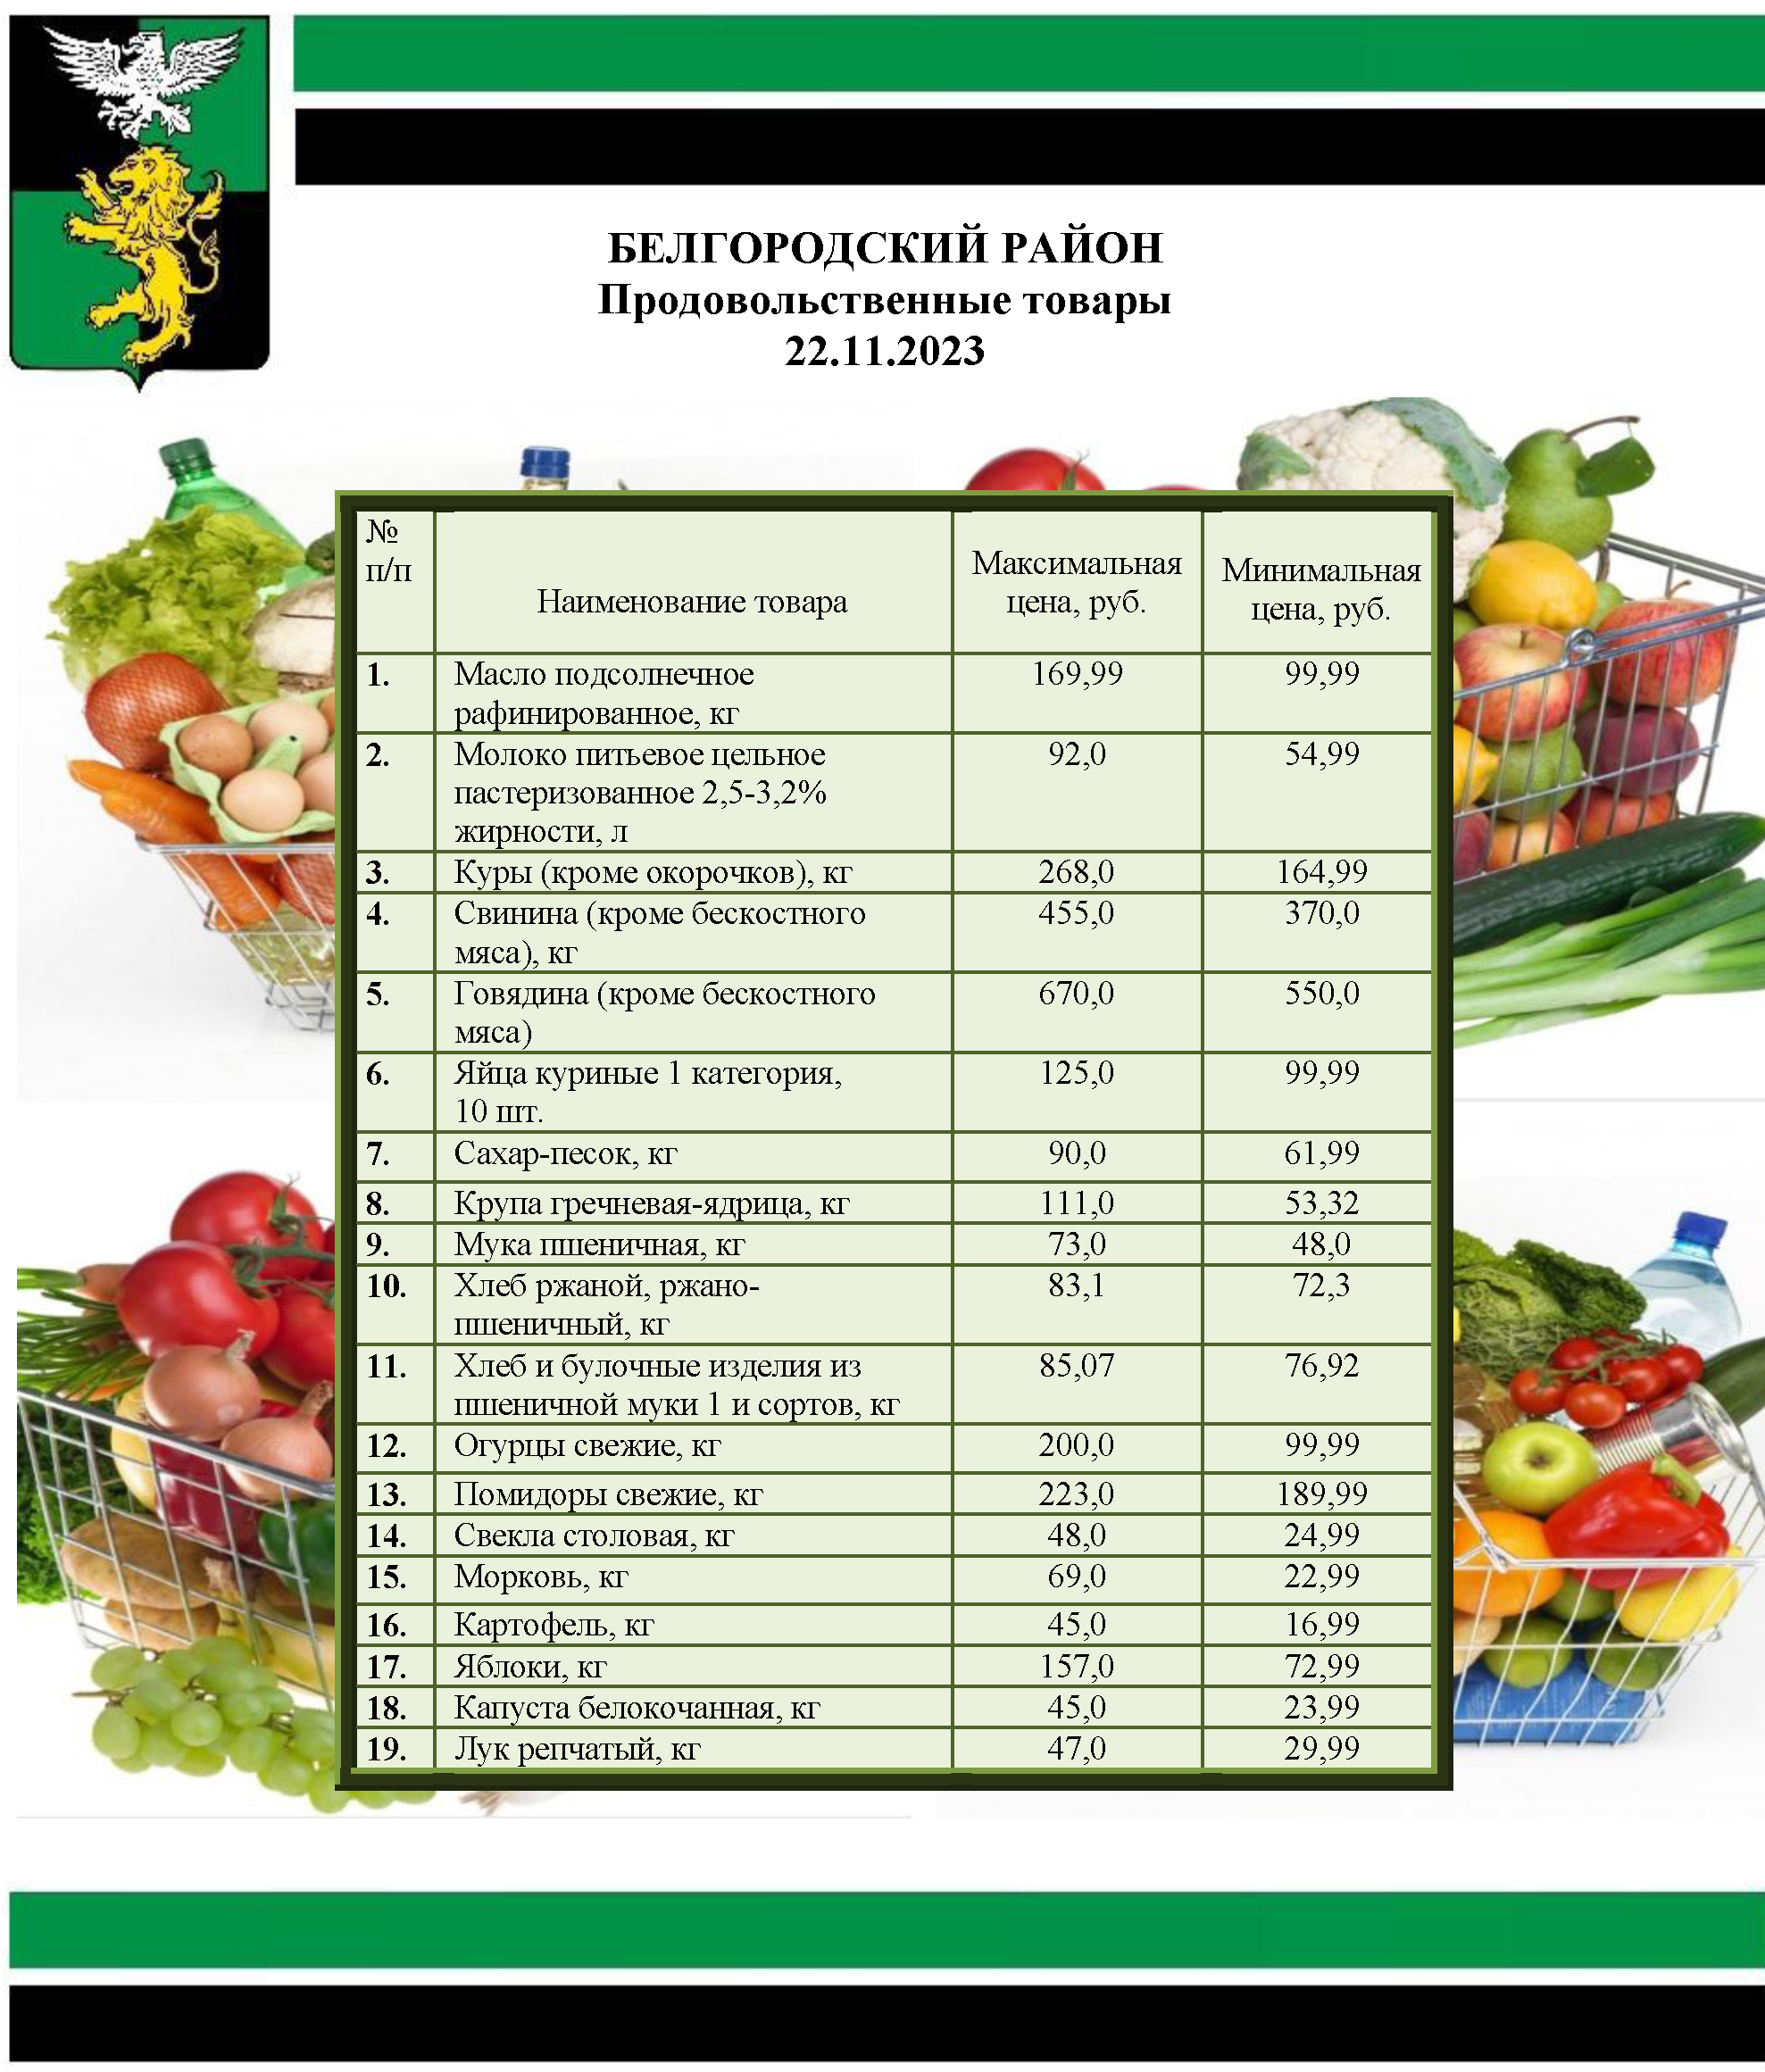 Информация о ценах на продовольственные товары, подлежащие мониторингу, на территории Белгородского района на 22.11.2023.